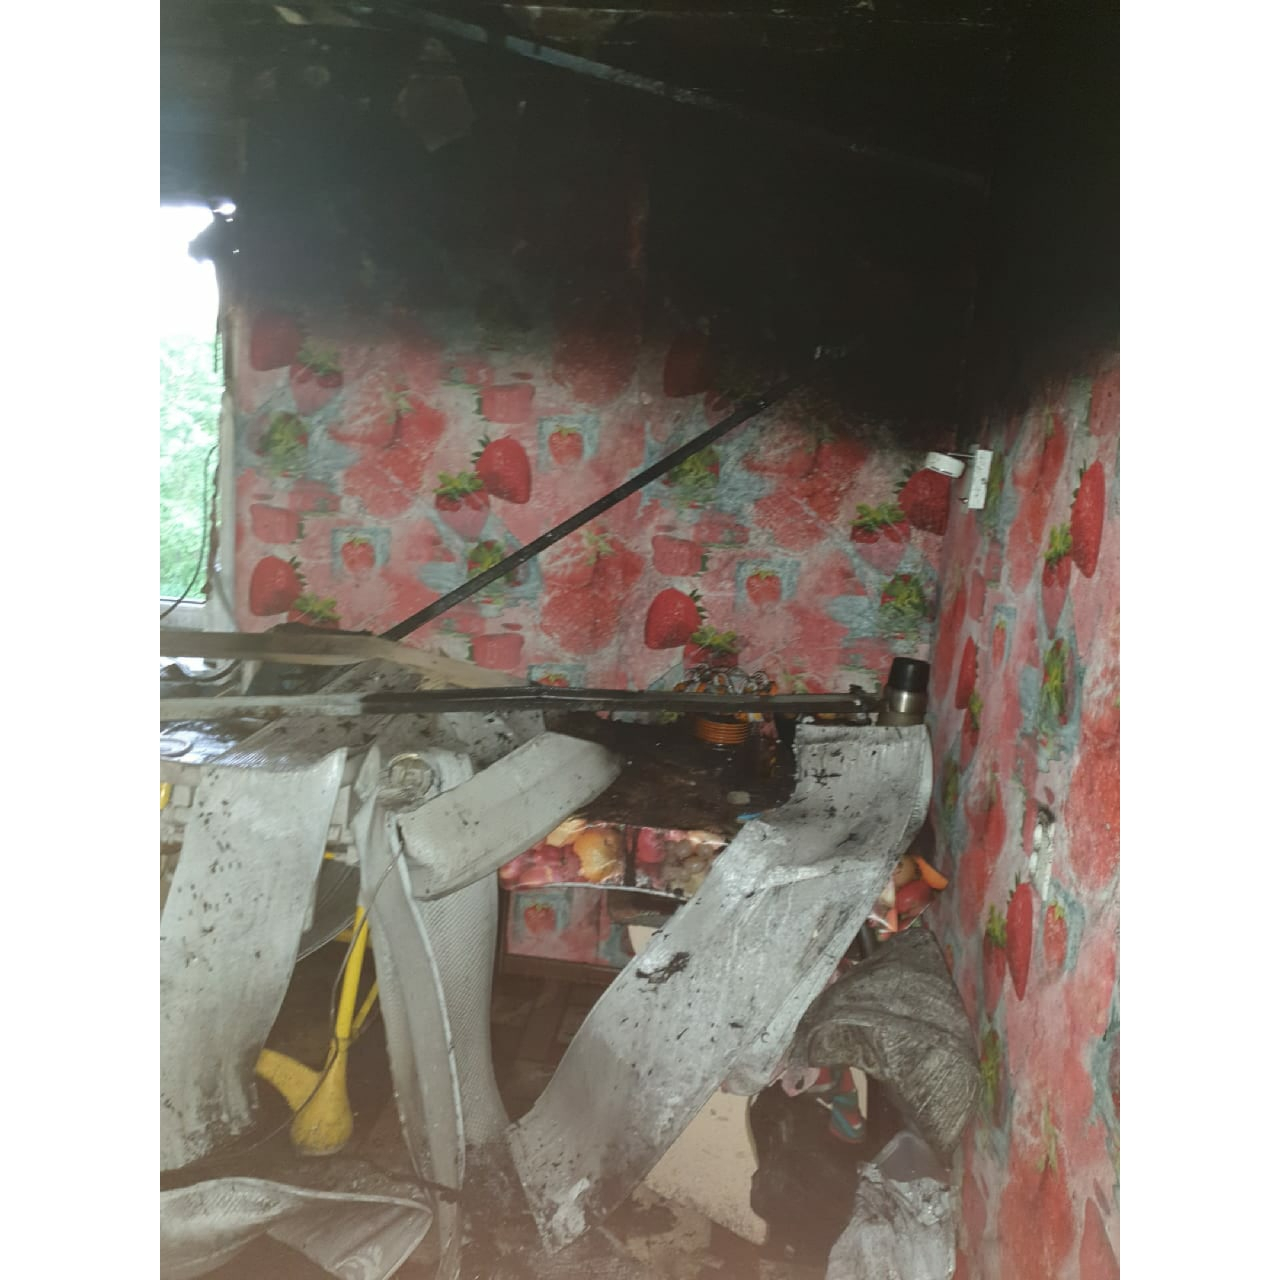 "Когда муж открыл дверь в квартиру, там уже полыхал огонь": из-за пожара многодетная семья осталась без жилья